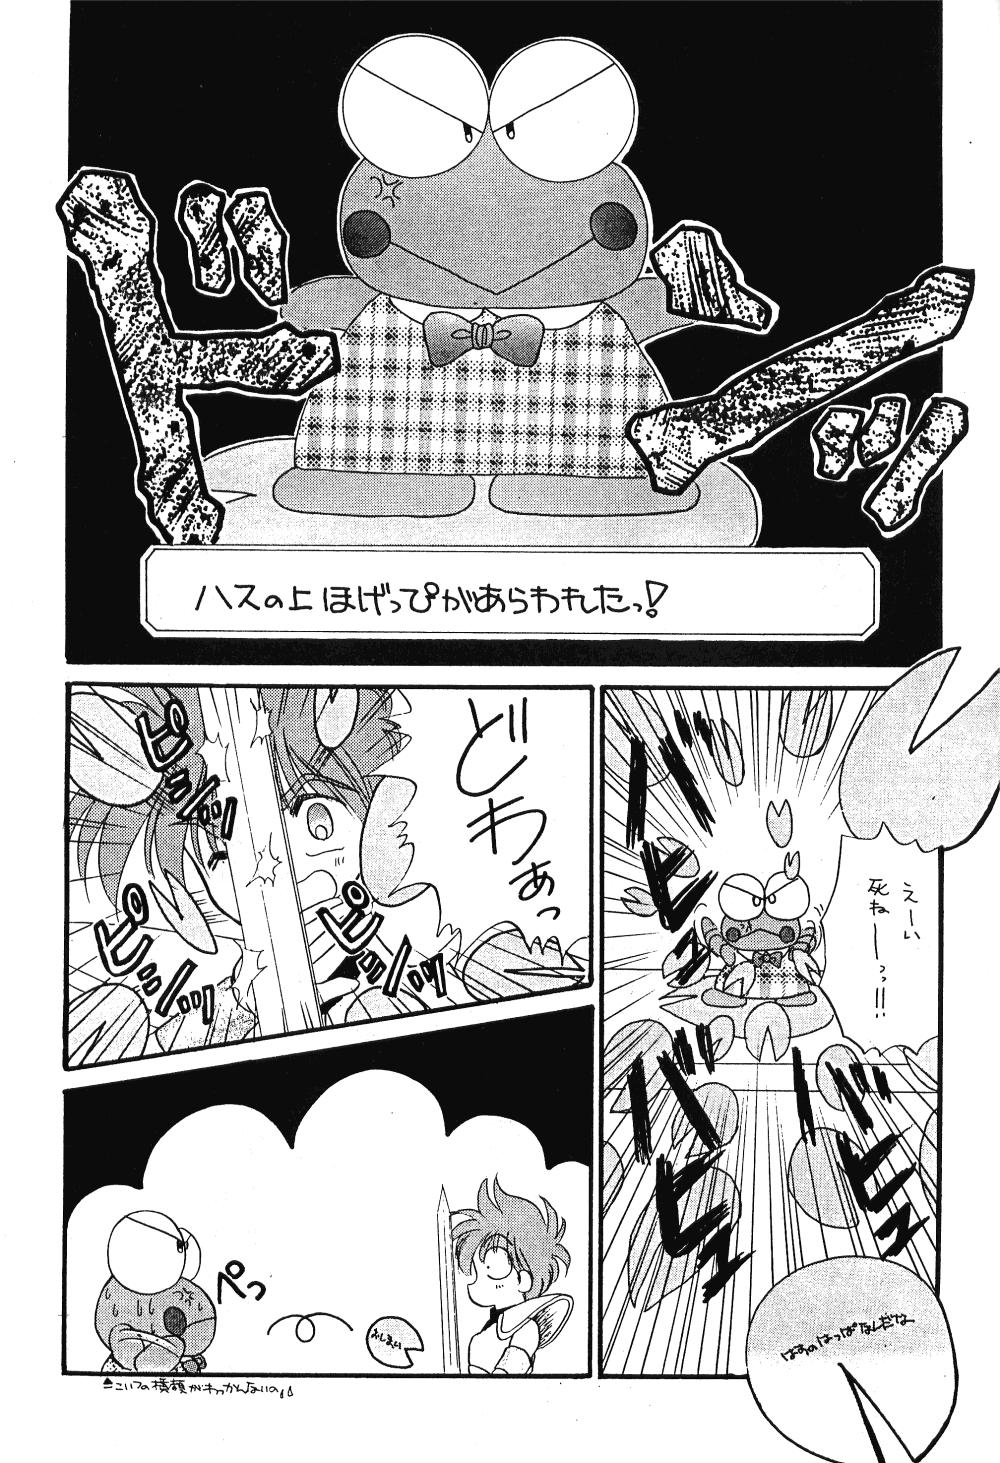 Footworship Peke Peke 4 - Sailor moon Ranma 12 Yawara Forwomen - Page 8